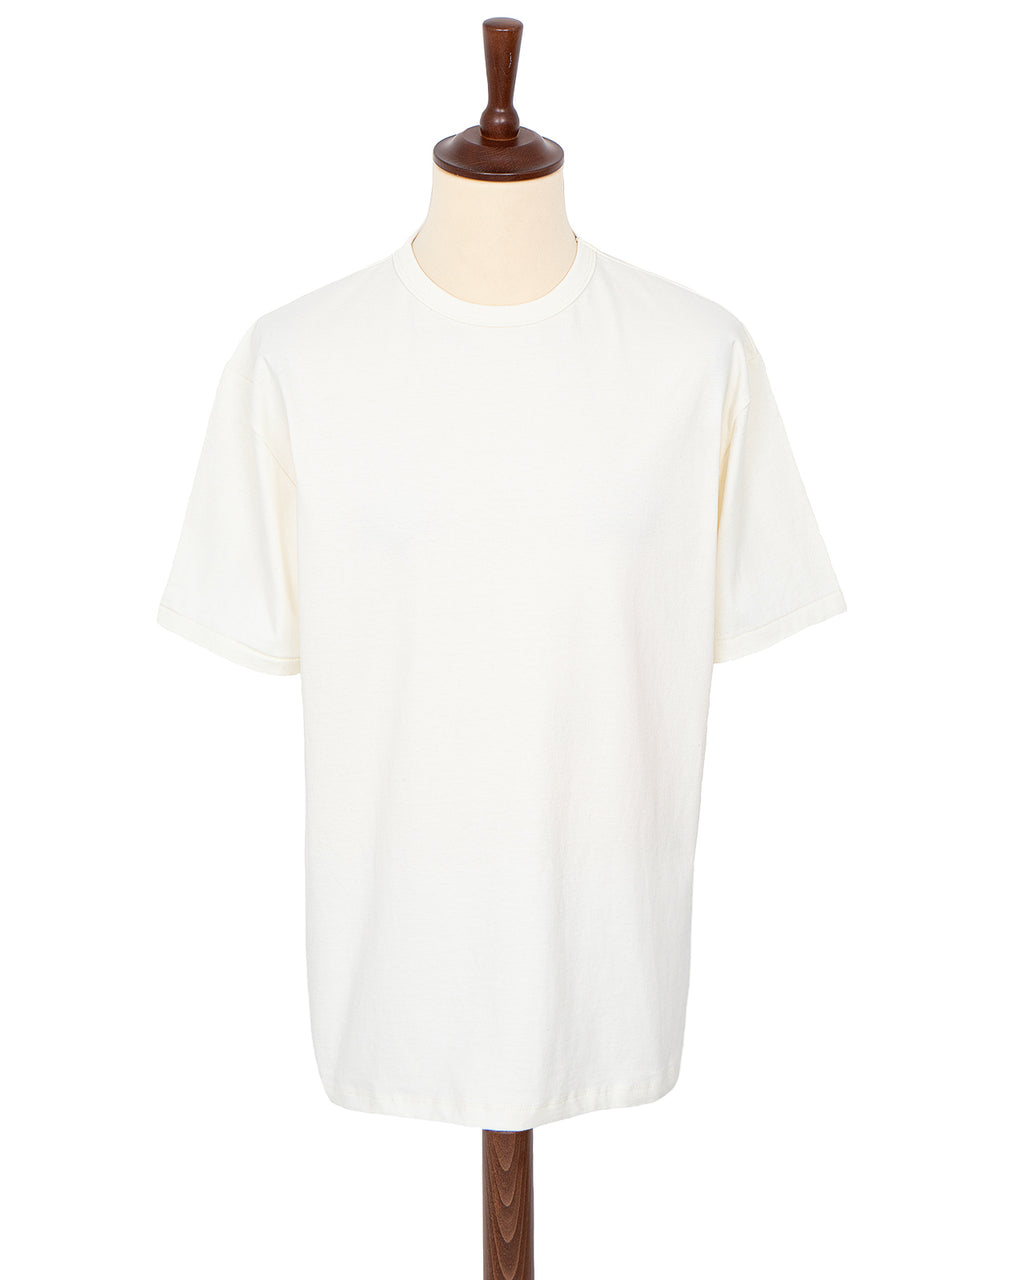 Glad Hand Heavy Weight Binder Neck T-Shirt, White